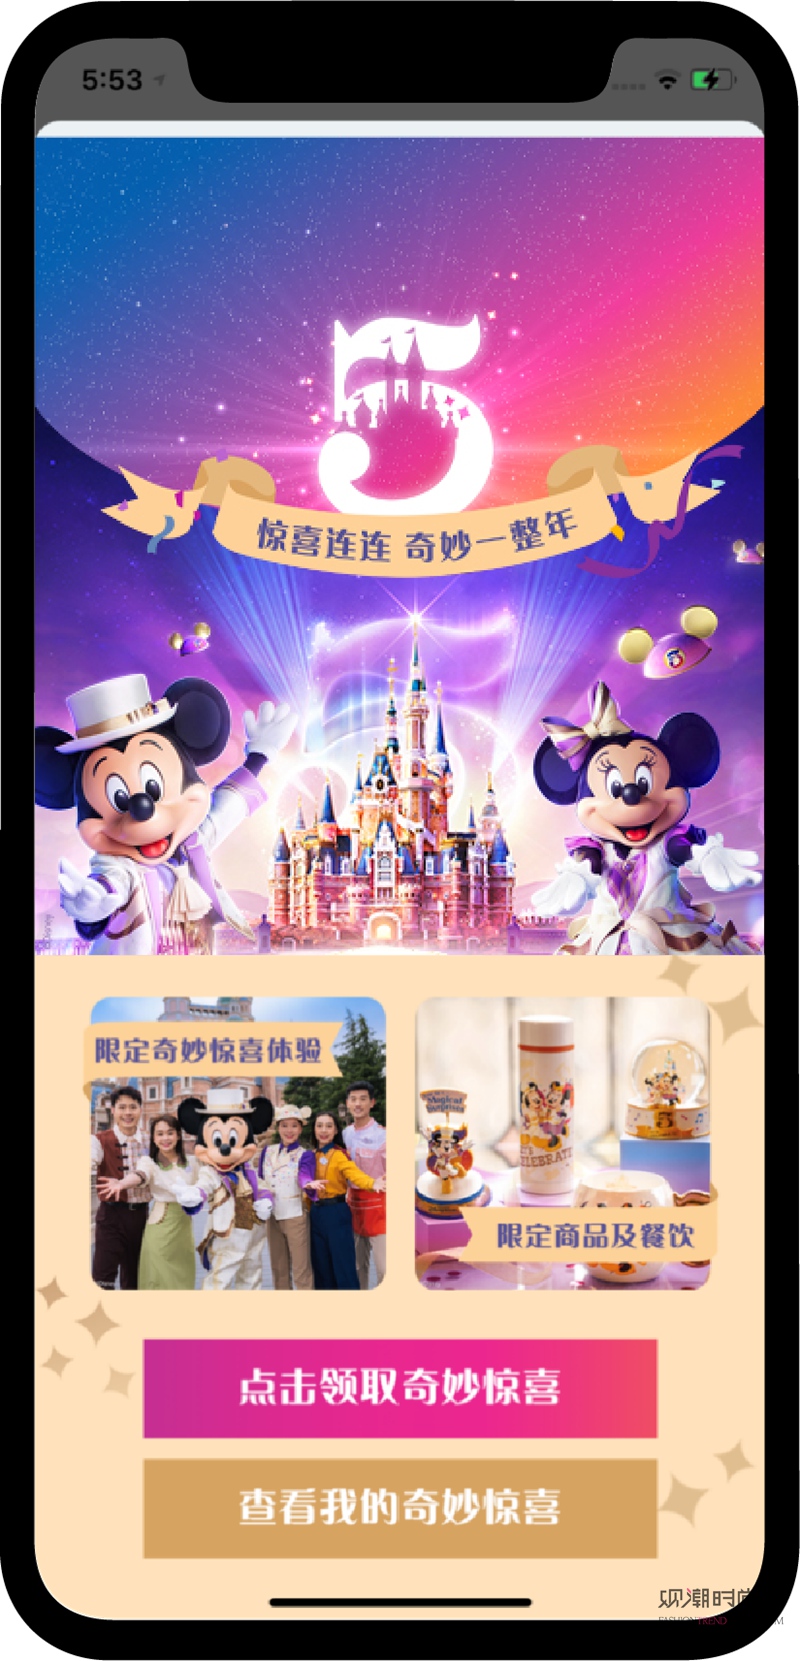 上海迪士尼度假区正式开启“惊...